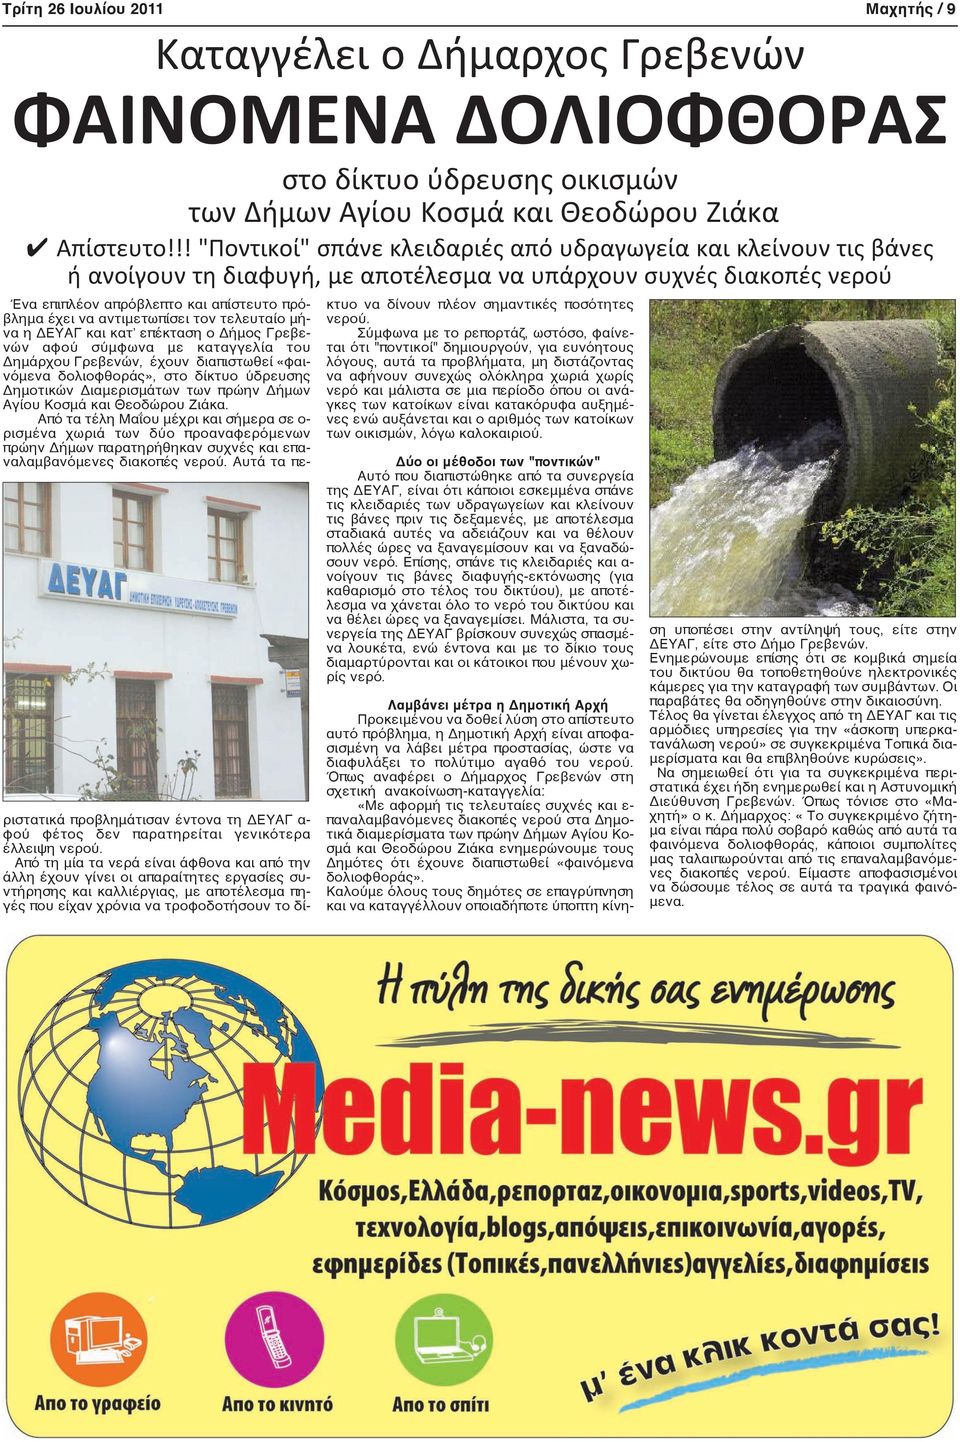 αντιμετωπίσει τον τελευταίο μήνα η ΔΕΥΑΓ και κατ επέκταση ο Δήμος Γρεβενών αφού σύμφωνα με καταγγελία του Δημάρχου Γρεβενών, έχουν διαπιστωθεί «φαινόμενα δολιοφθοράς», στο δίκτυο ύδρευσης Δημοτικών